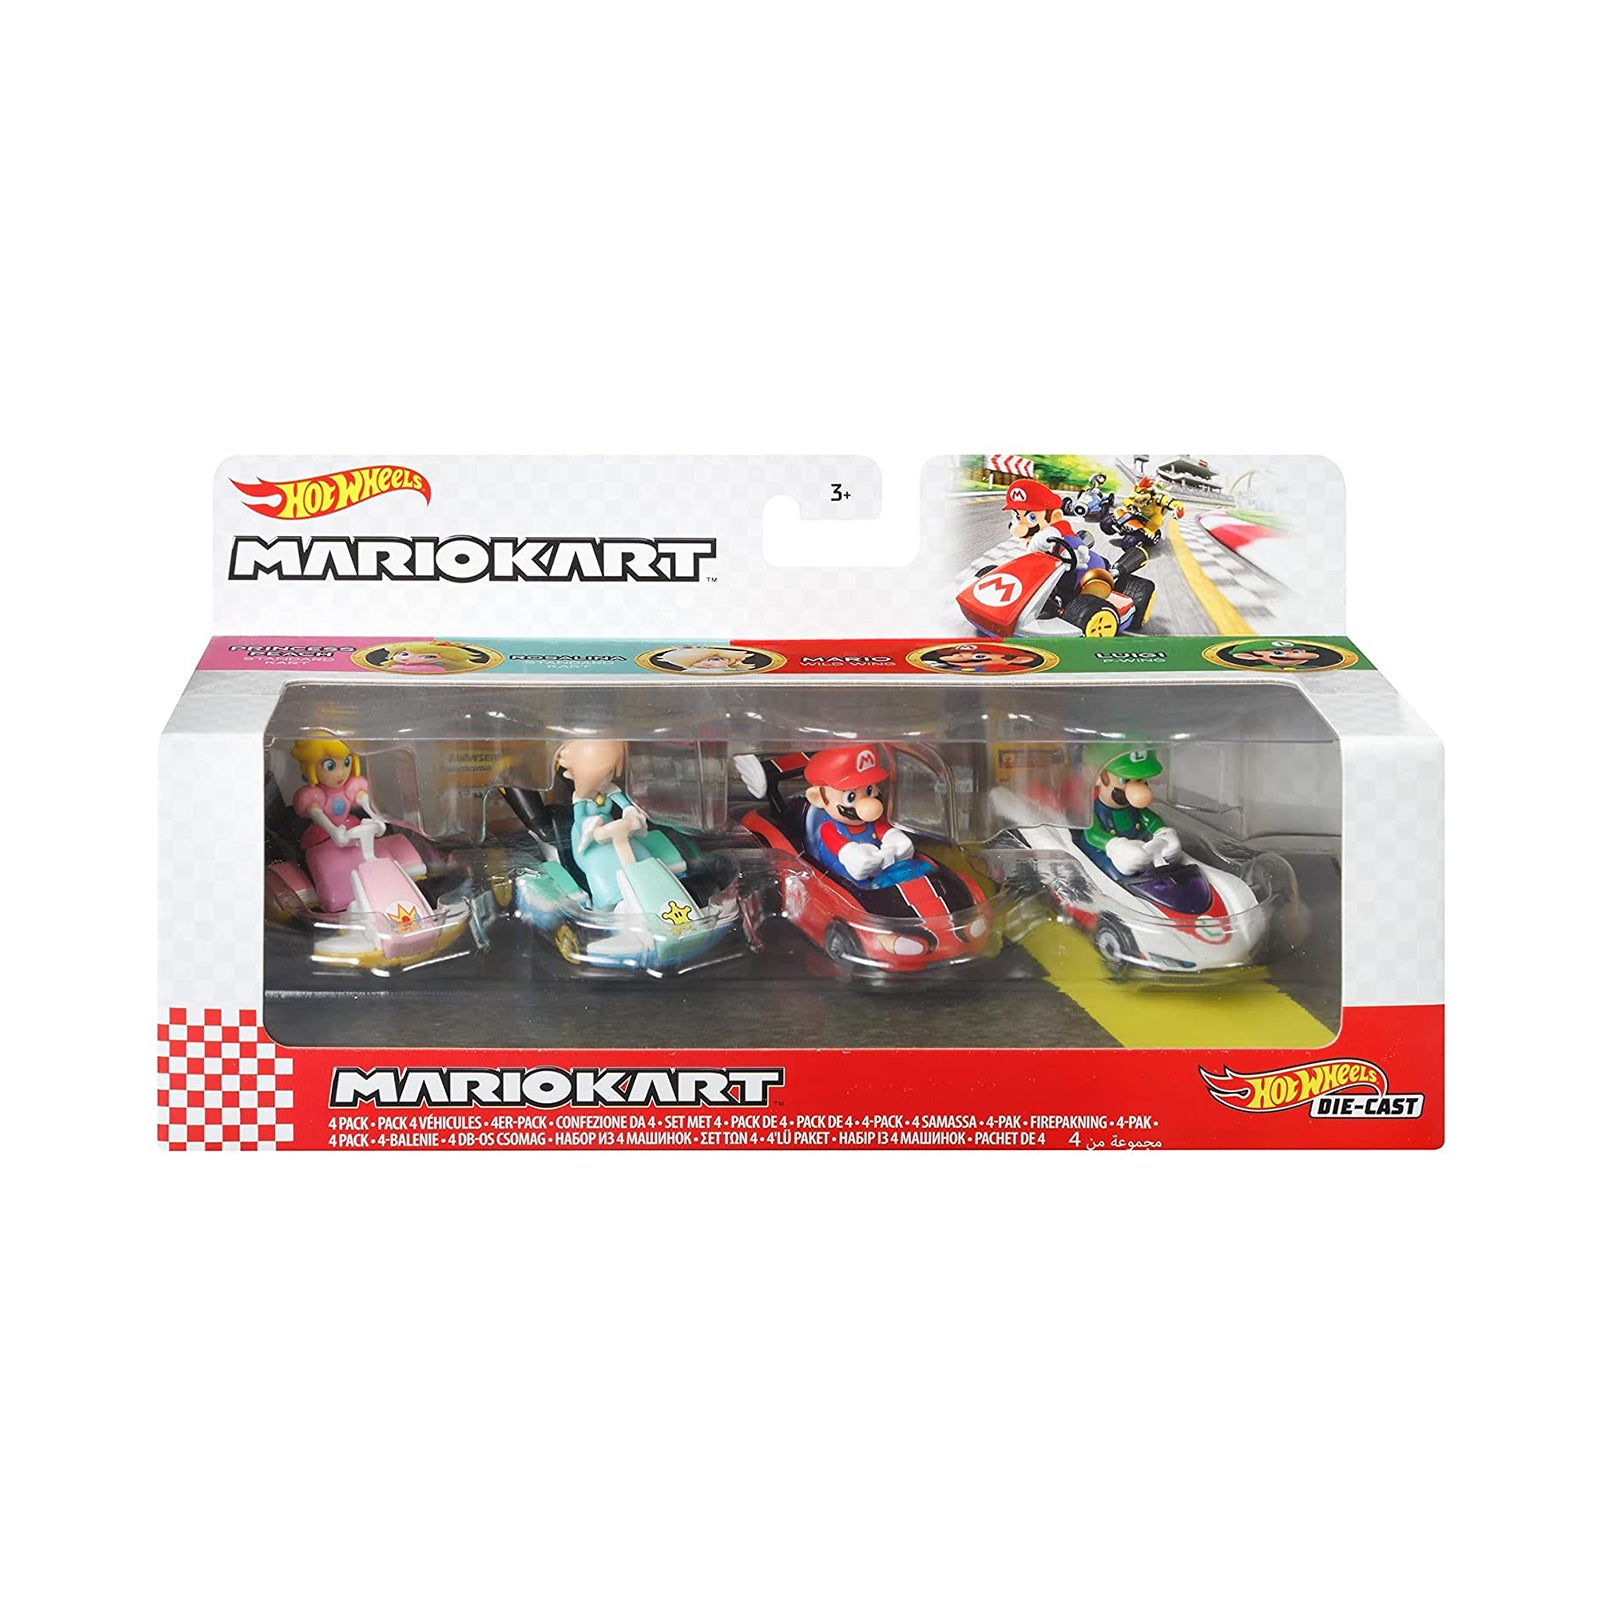 Hot Wheels Mario Kart Rosalina Toys Cars Trucks And Vans Toys And Hobbies 9068